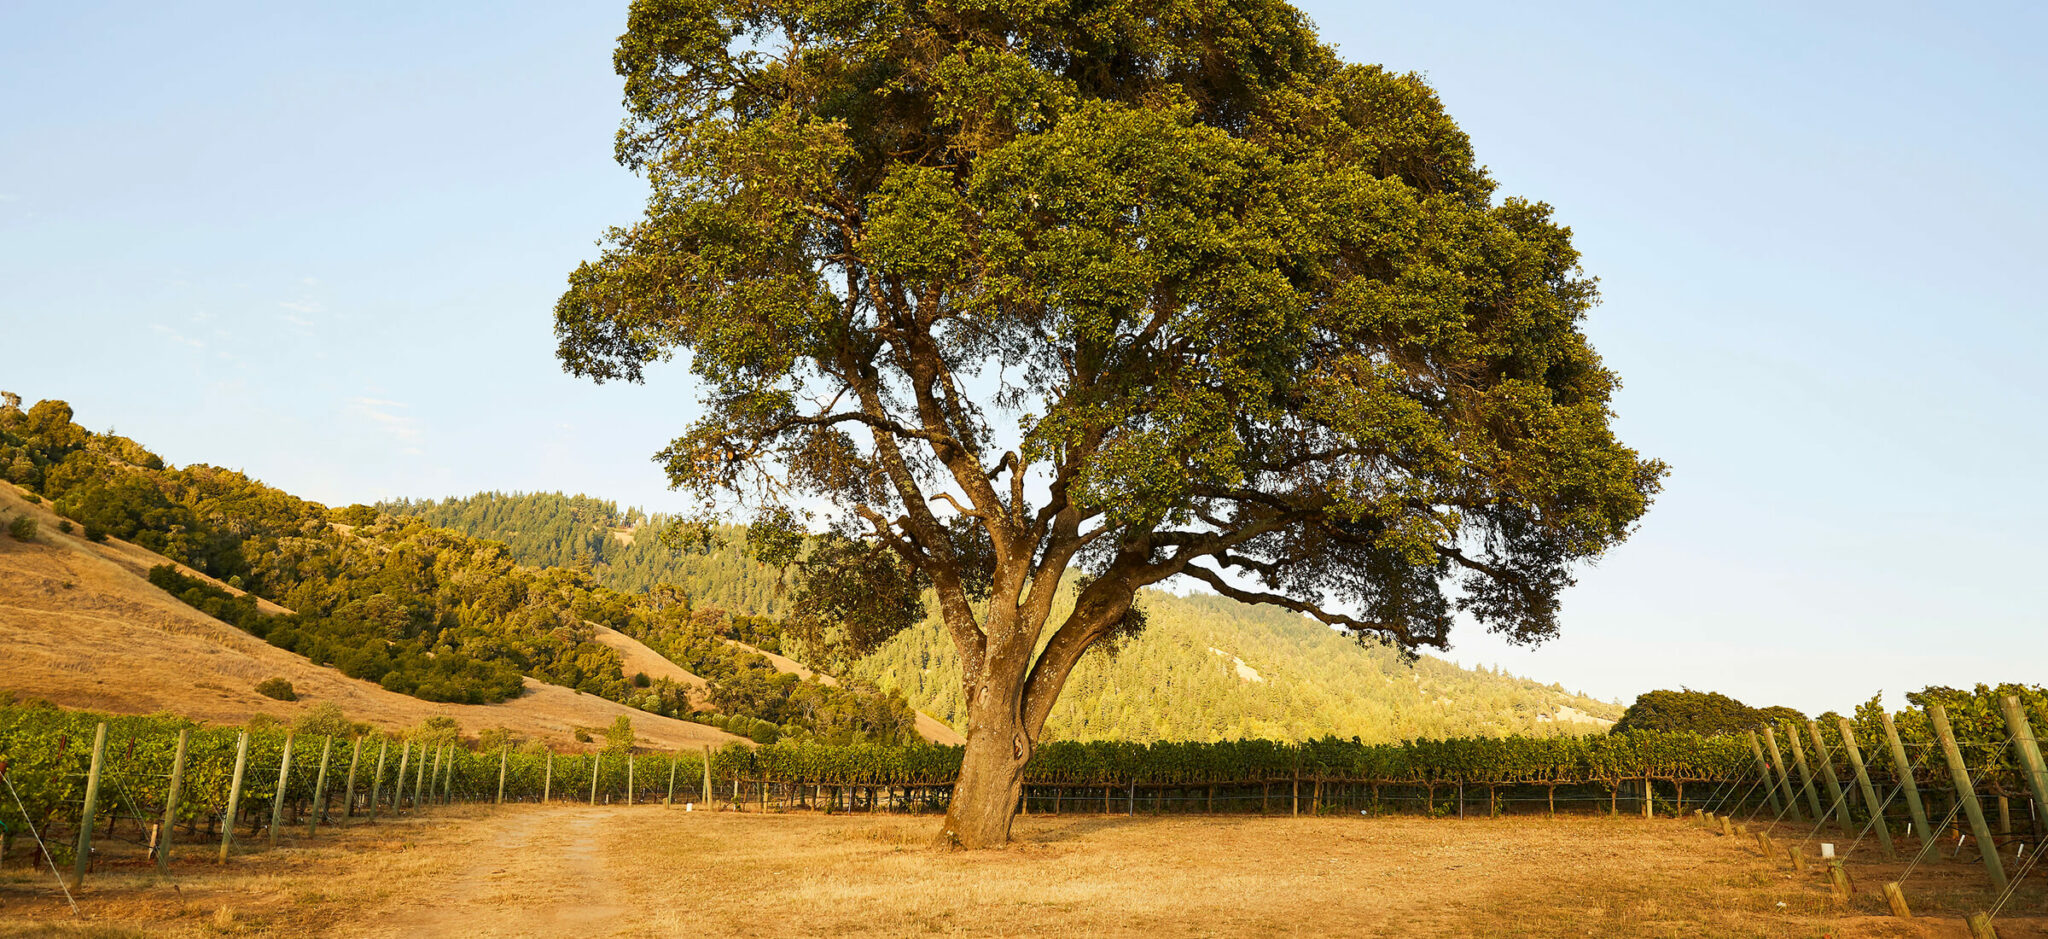 Large oak tree in vineyard.